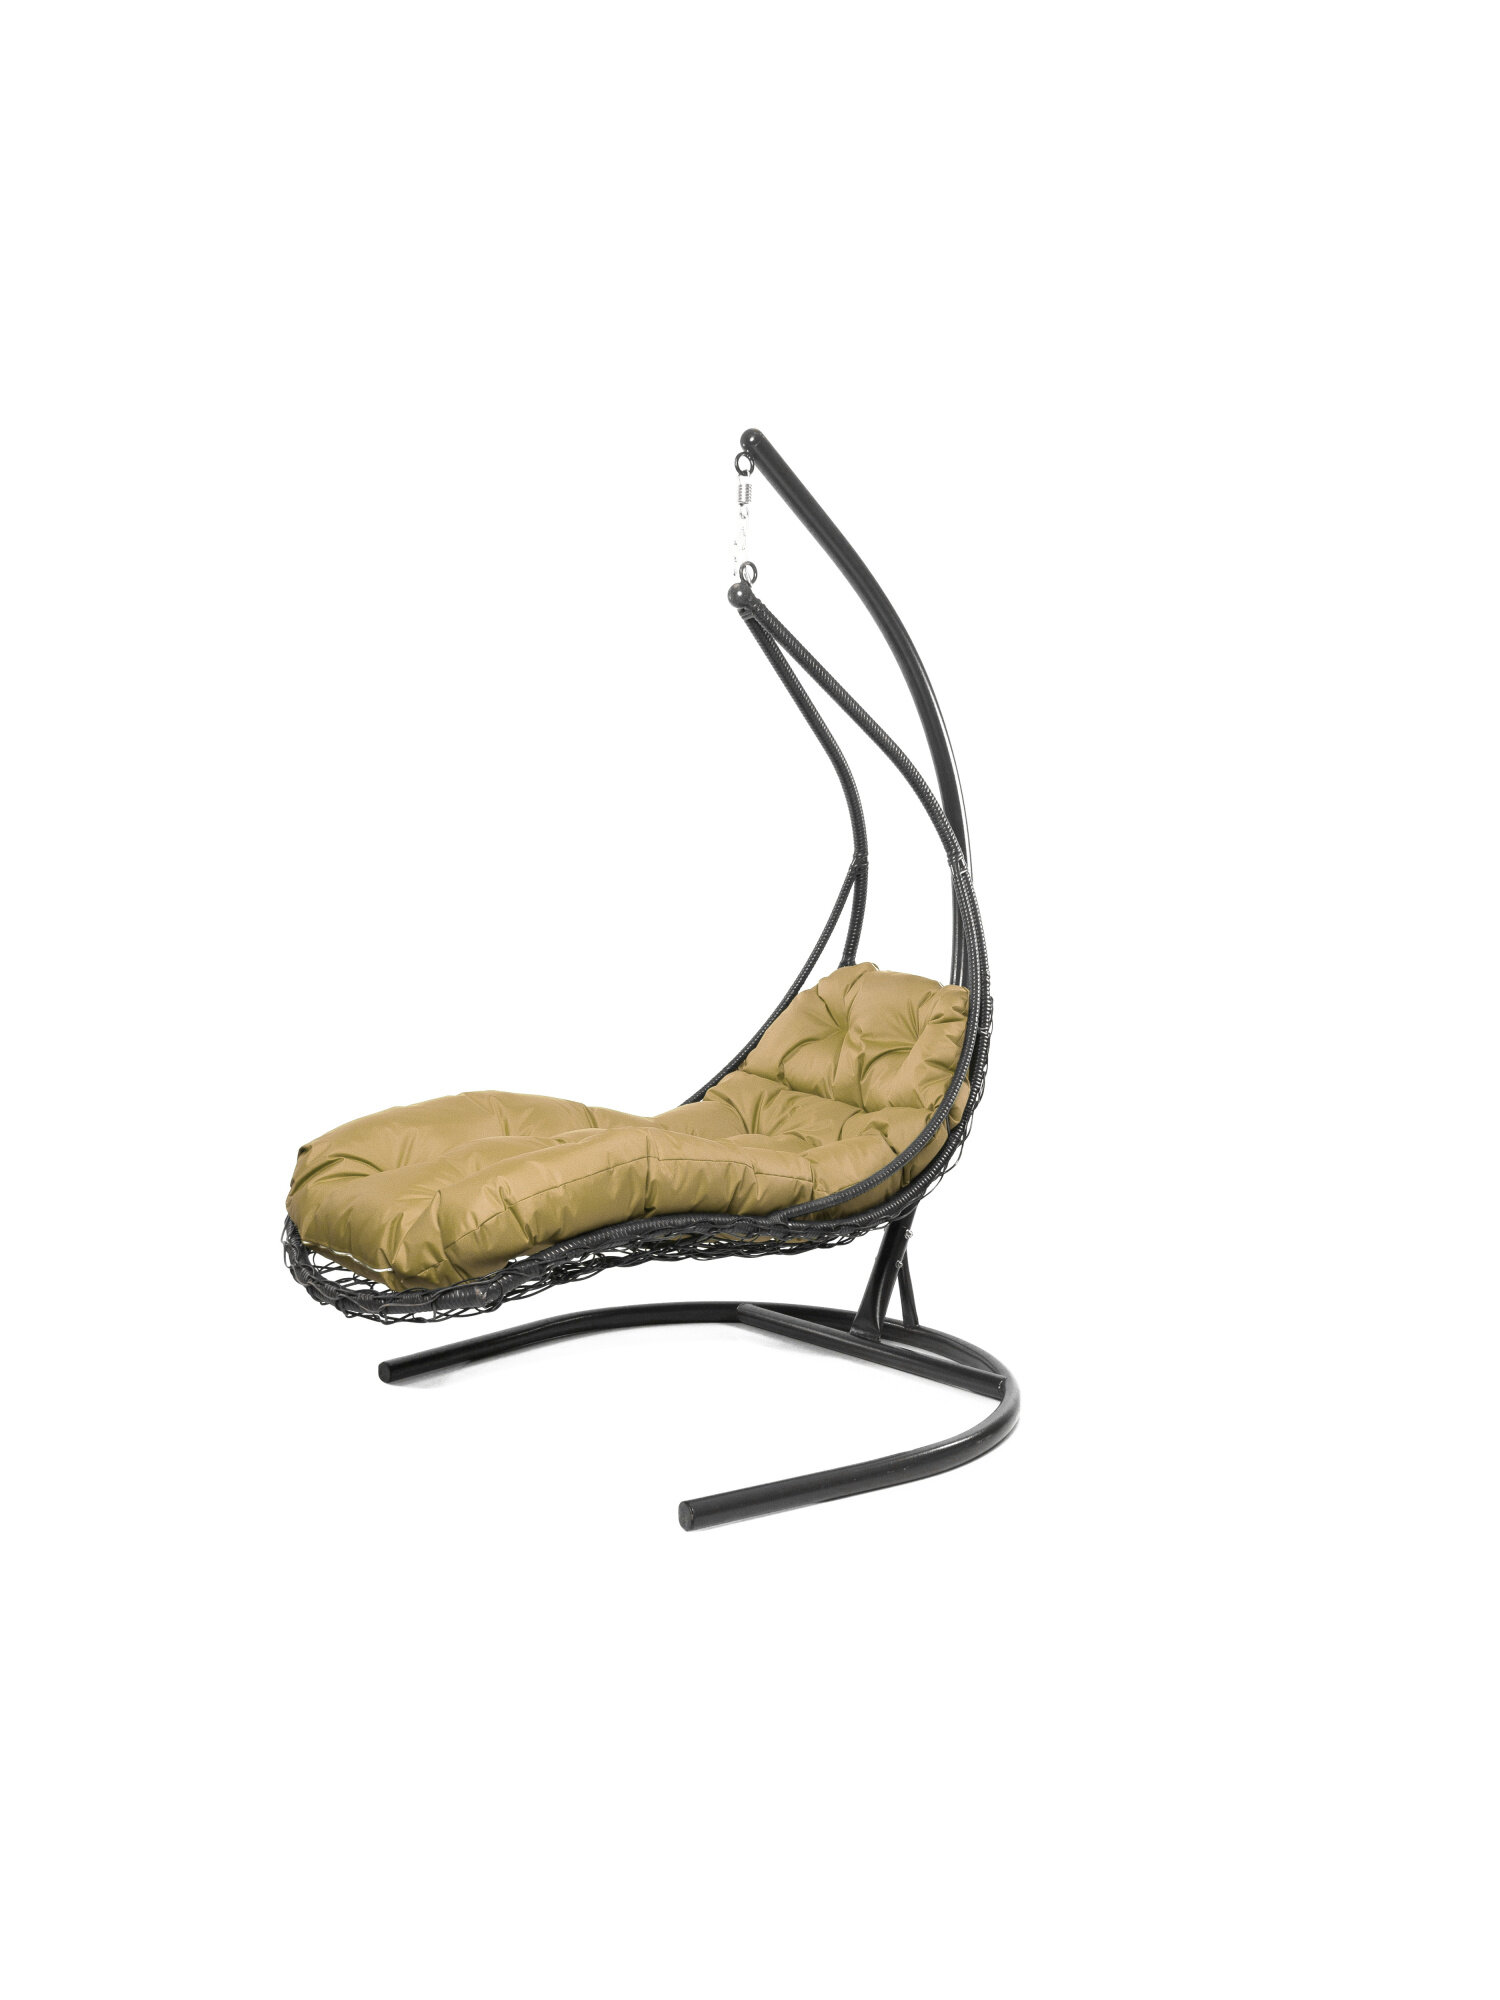 Подвесное кресло M-group лежачее с ротангом серое бежевая подушка